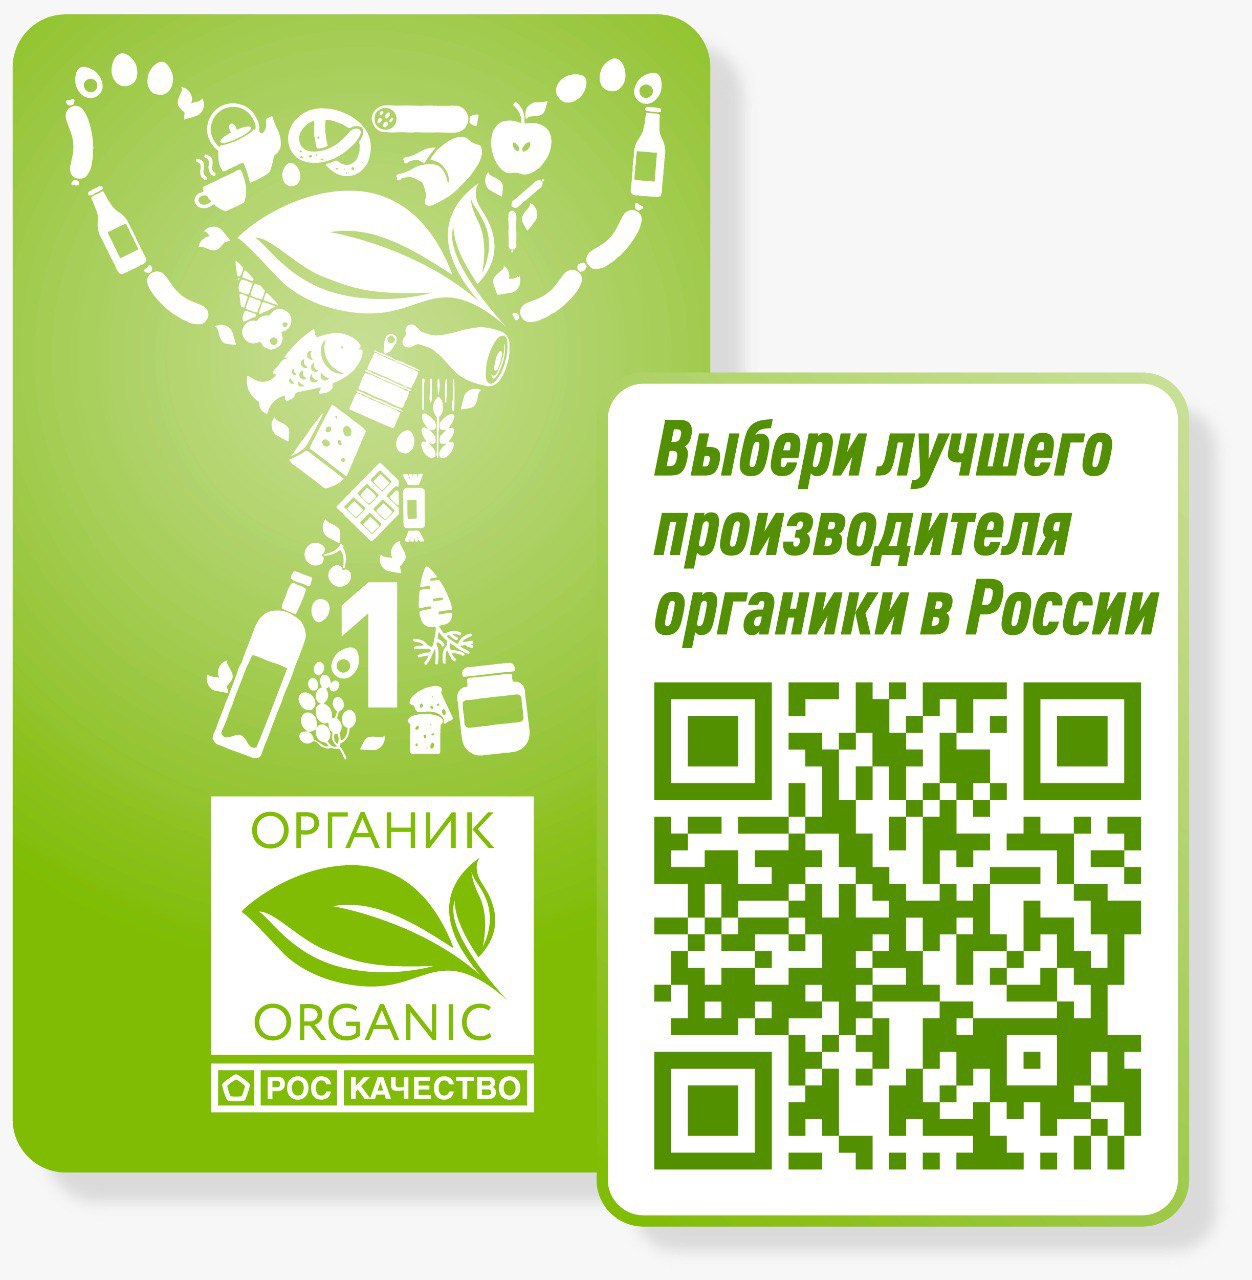 В России выберут народный органический бренд